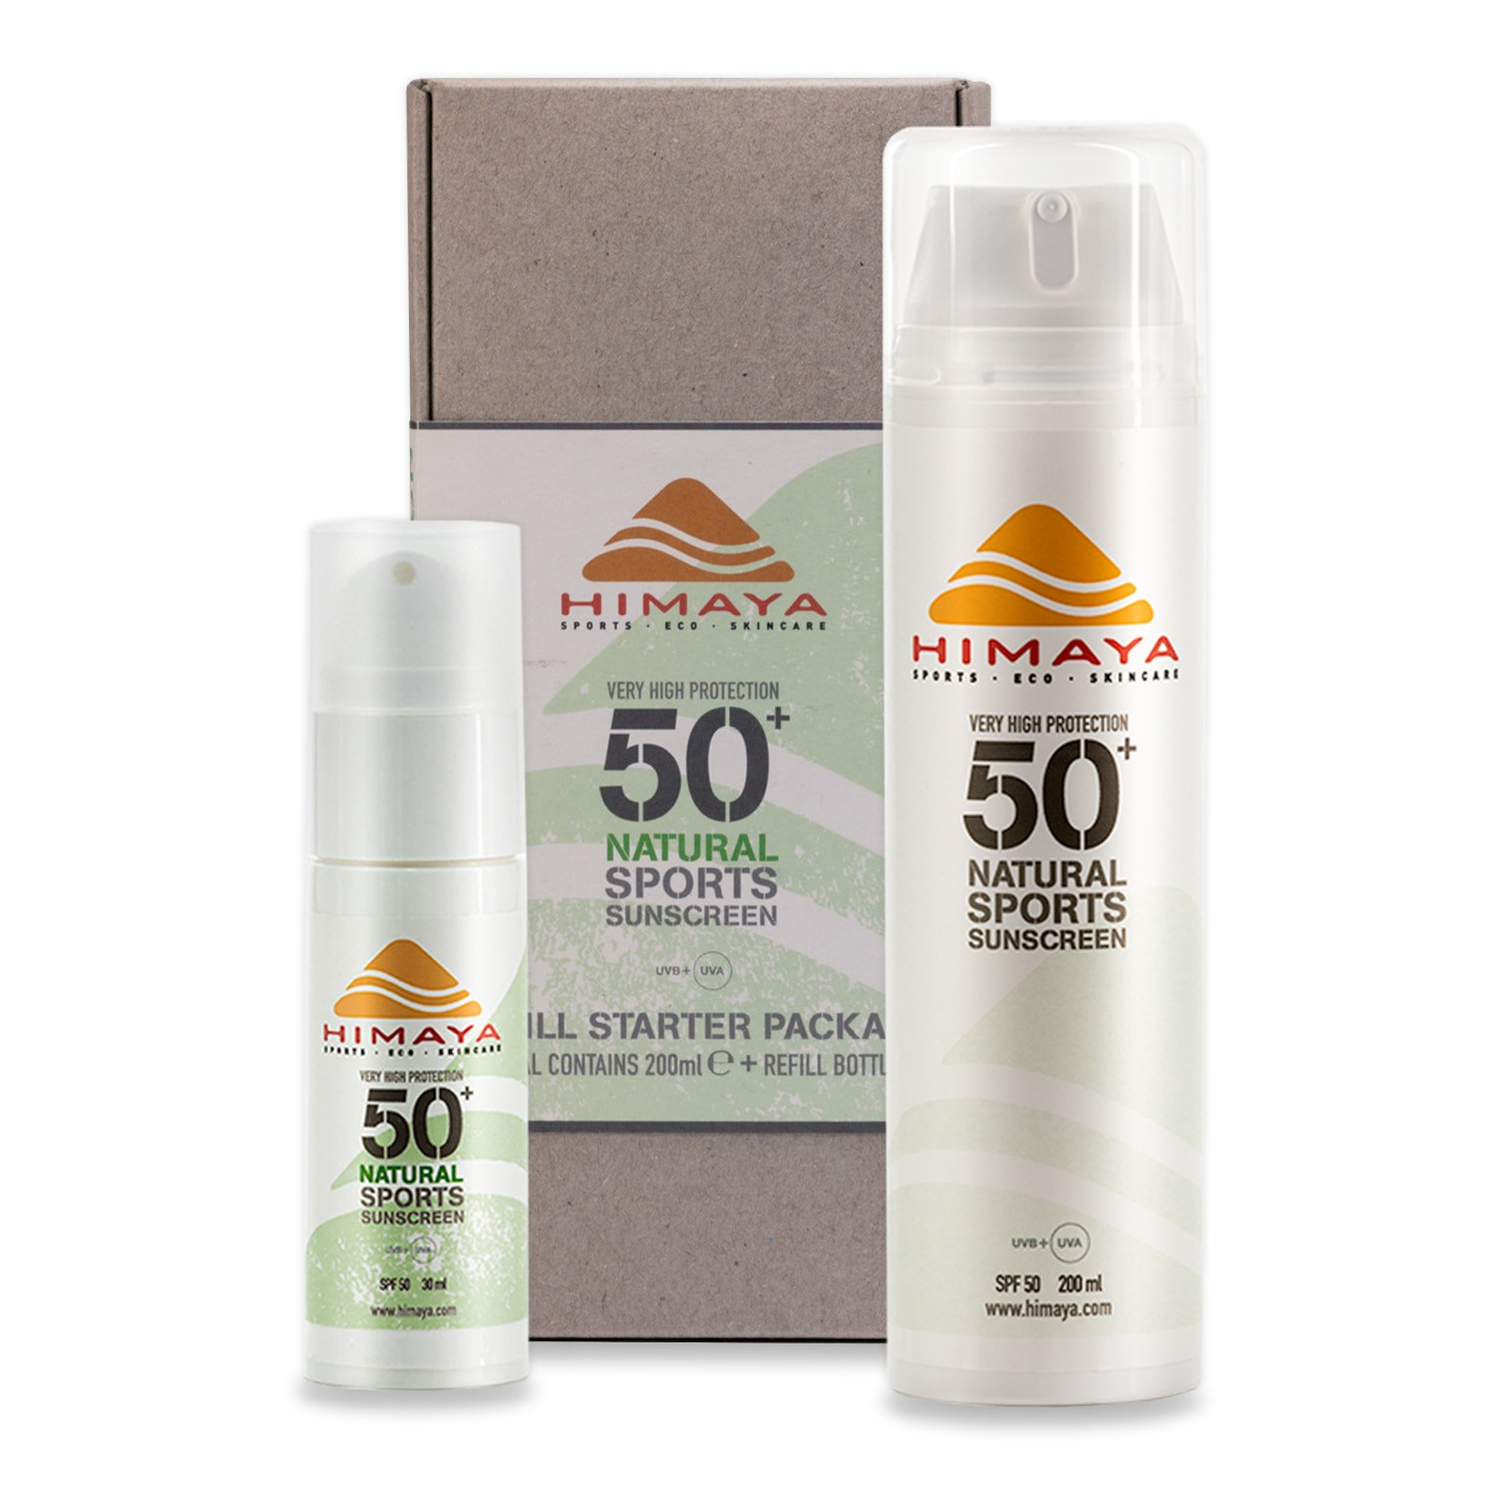 Himaya Natural sunscreen SPF 50+